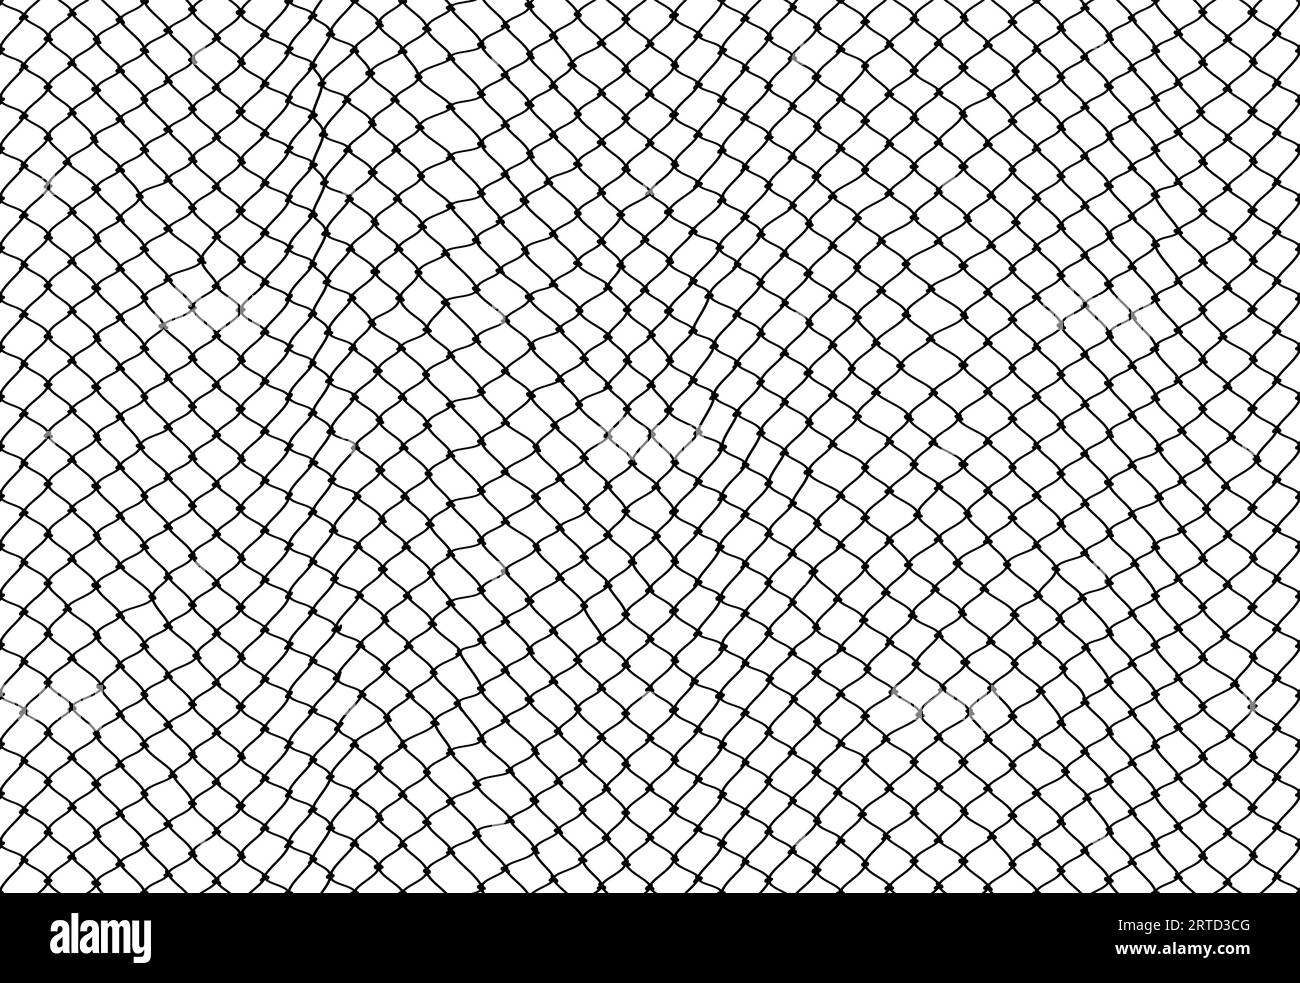 Soccer goal mesh, fishnet pattern or fish net background, vector